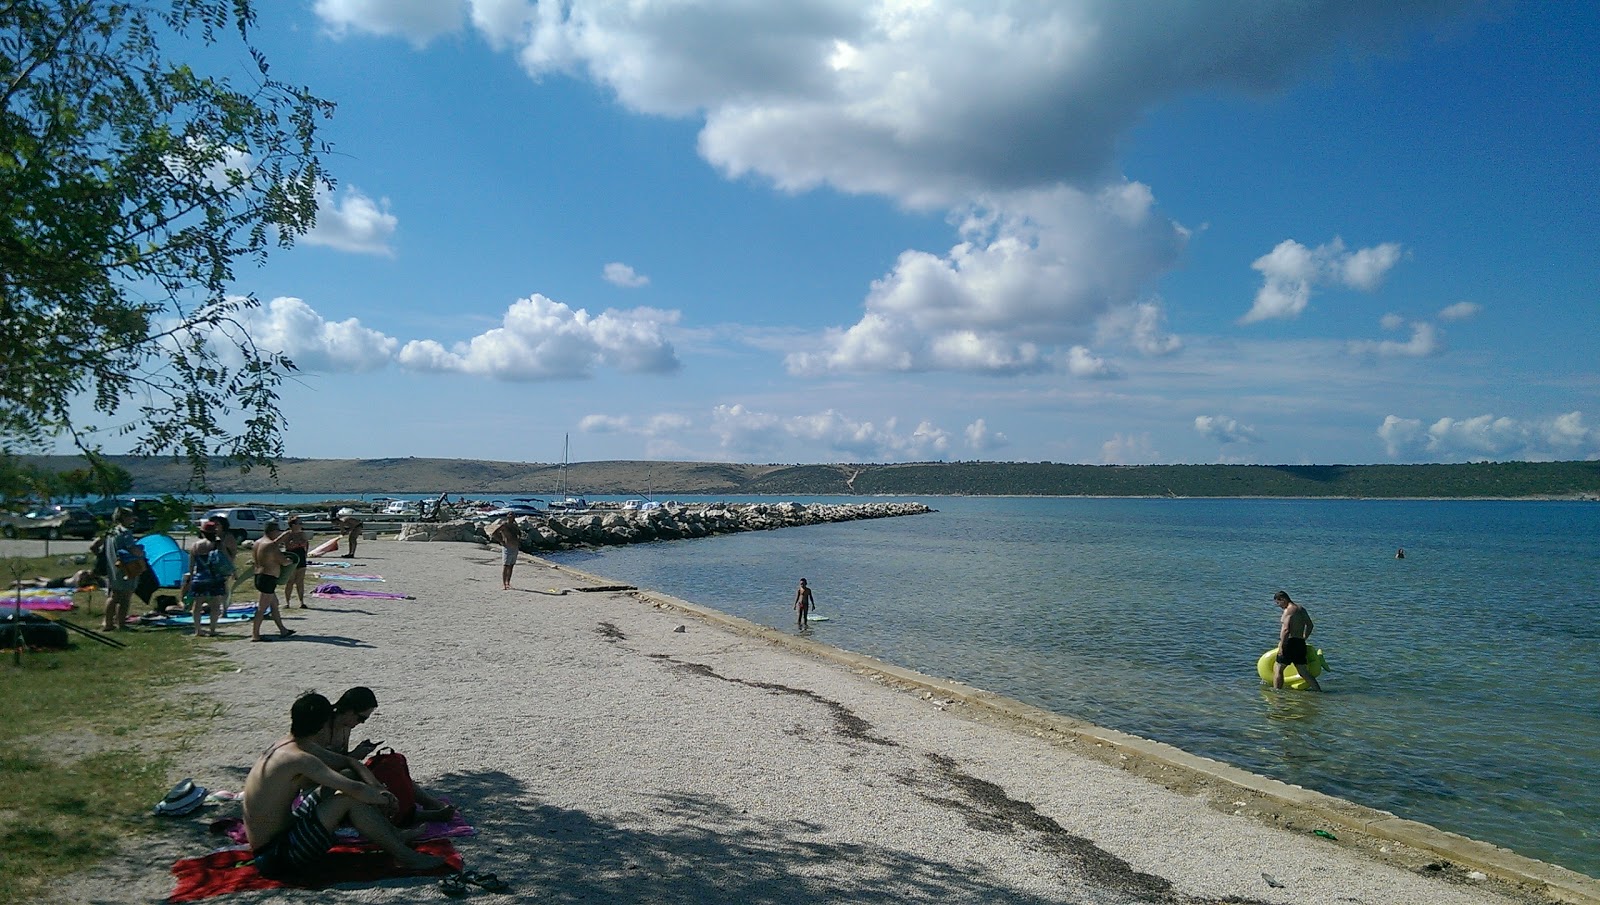 Ljubac beach II'in fotoğrafı hafif ince çakıl taş yüzey ile